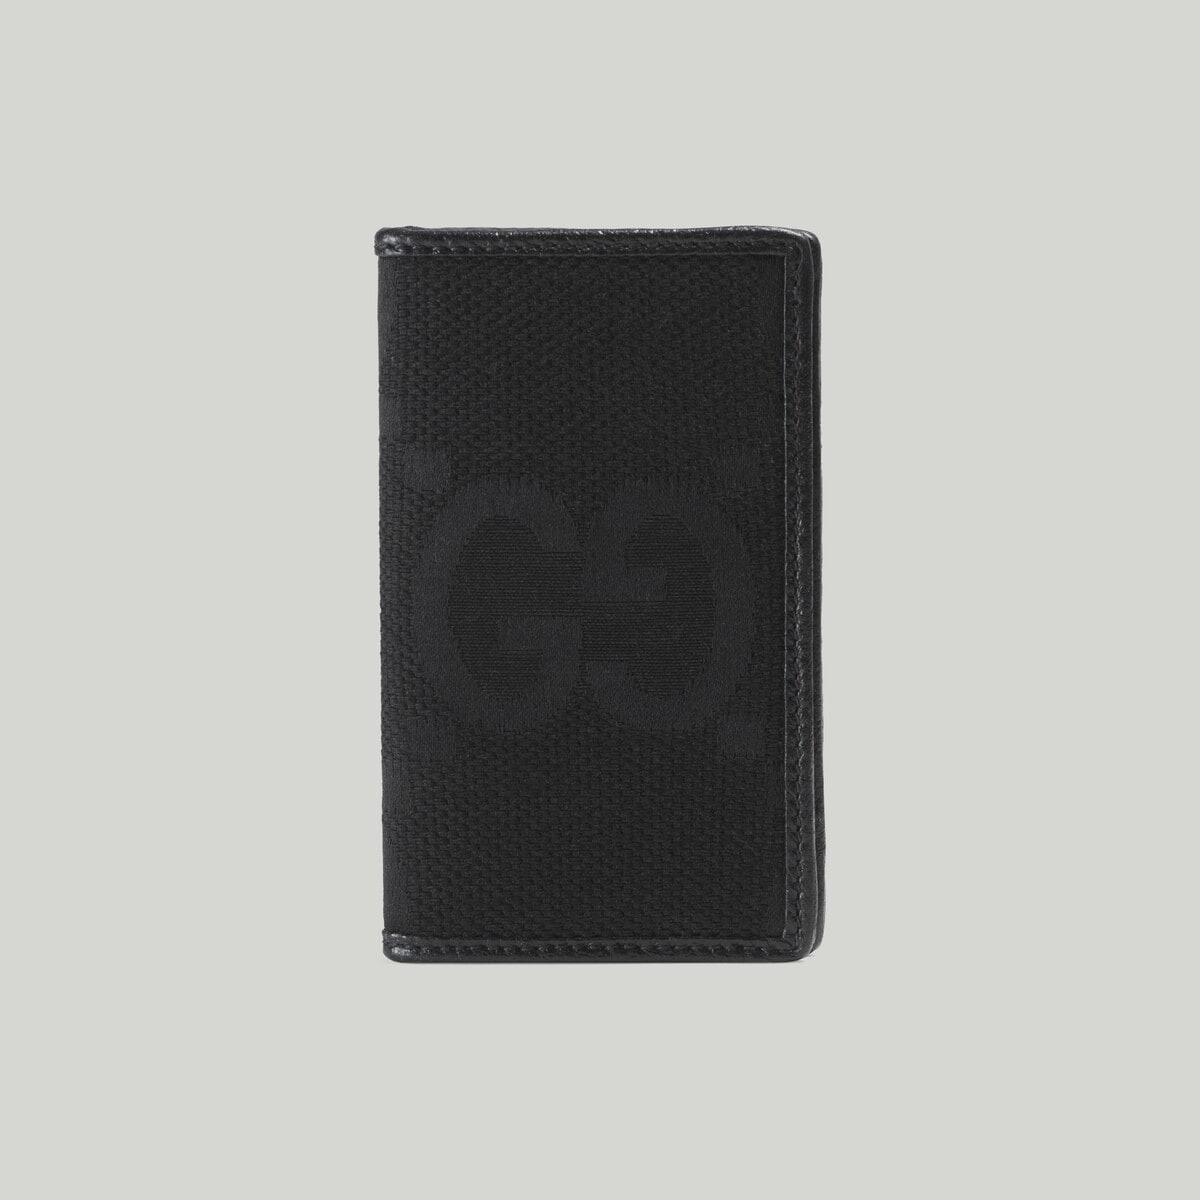 Jumbo GG card case - 1